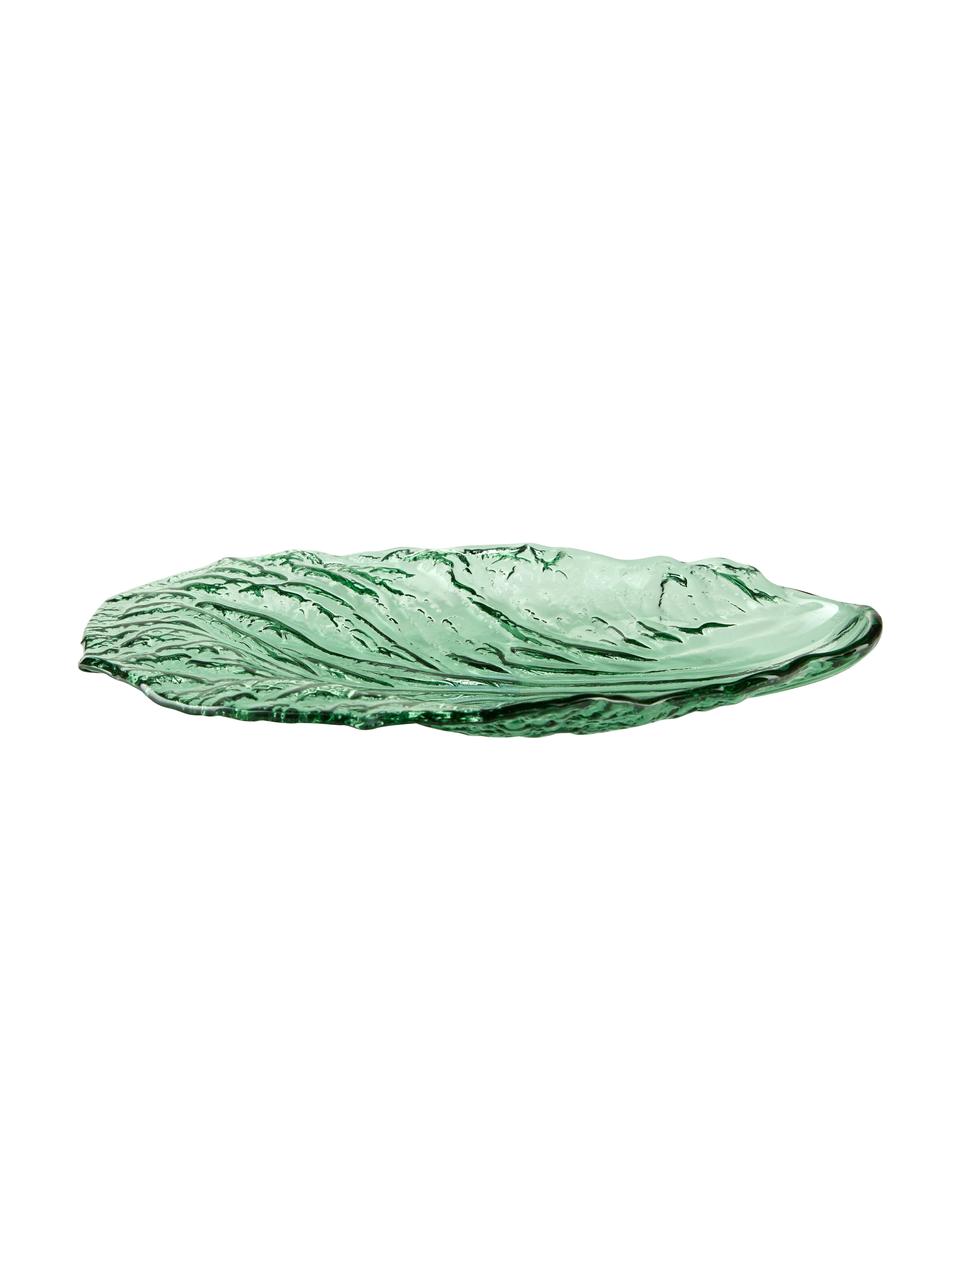 Glas-Servierplatte Leaf in Grün, L 28 x B 18 cm, Glas, Grün, transparent, L 28 x B 18 cm